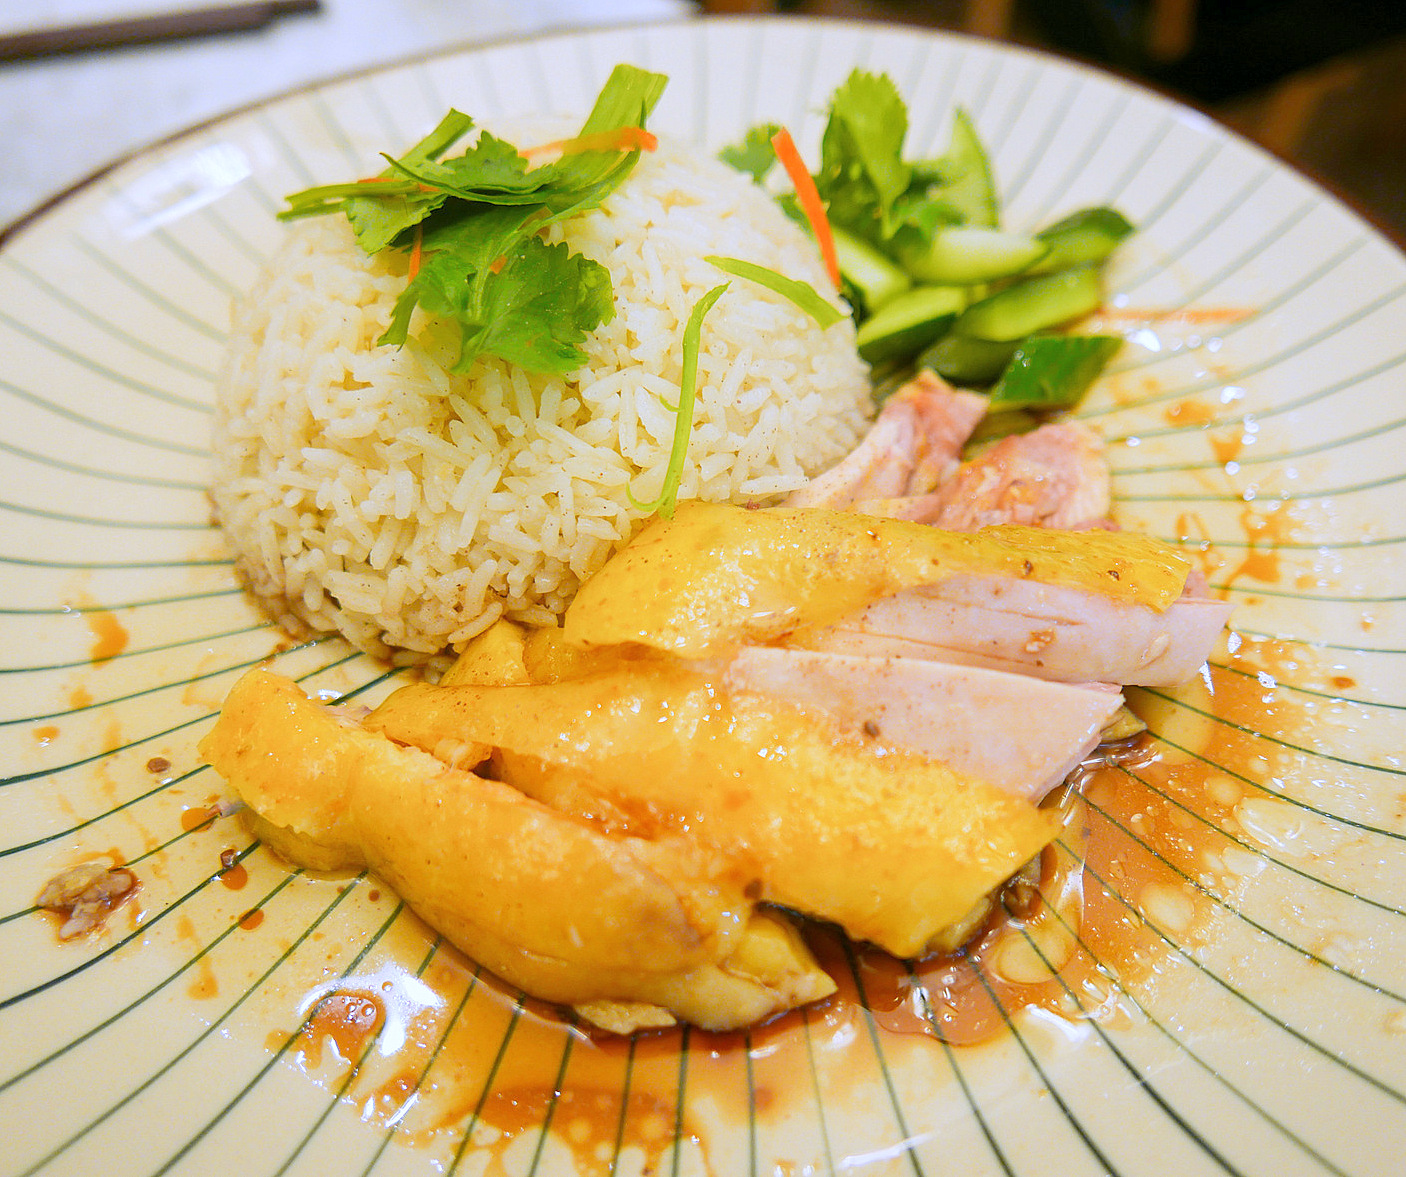 4. Chicken Rice